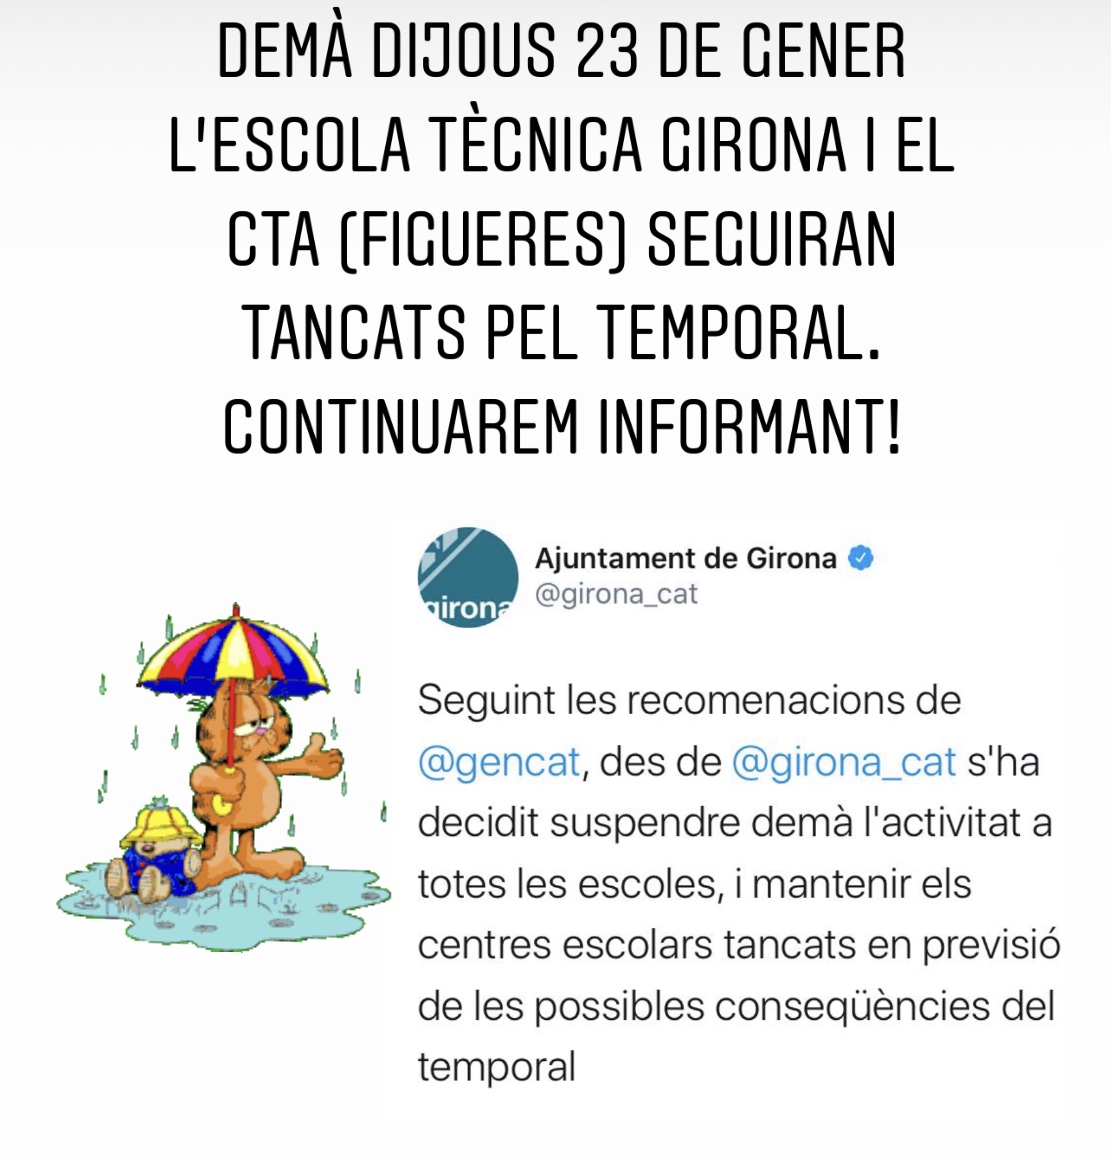 Mañana jueves 23 de enero la Escola Tècnica Girona y el CTA (Figueres) seguirán cerrados por el temporal